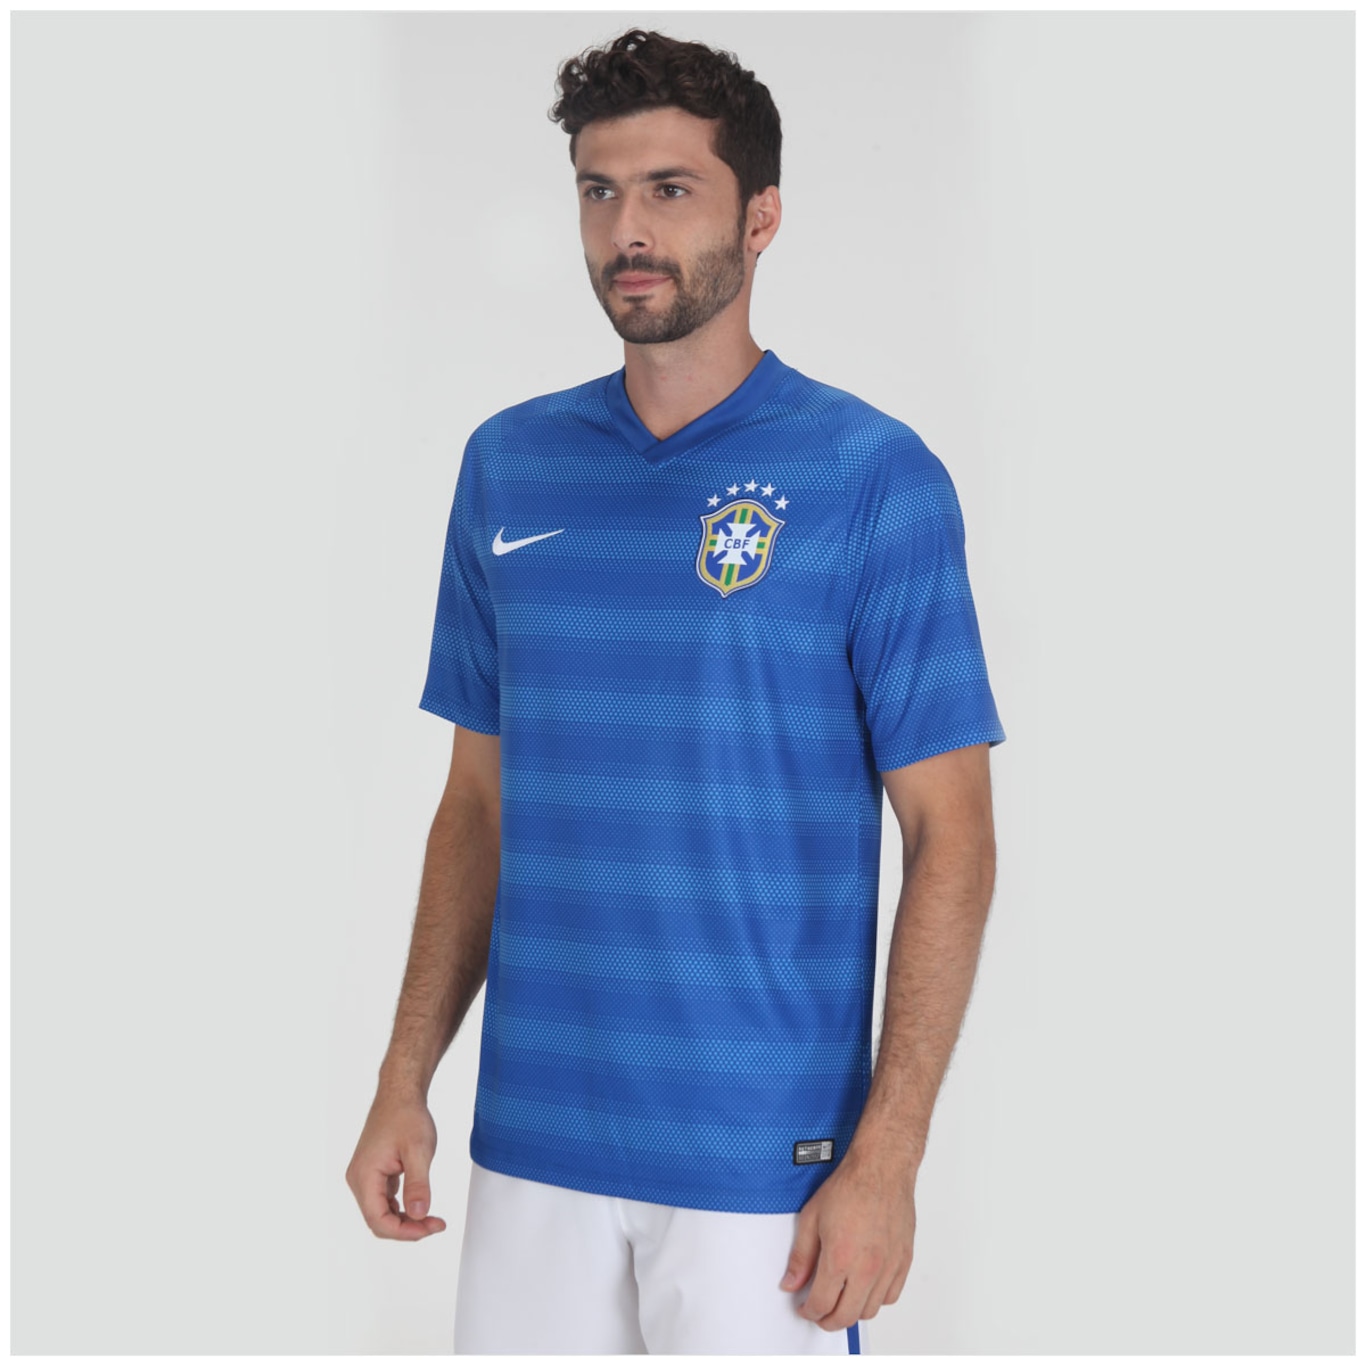 Camisa seleção brasileira 2014 em promoção - Ofertas do dia